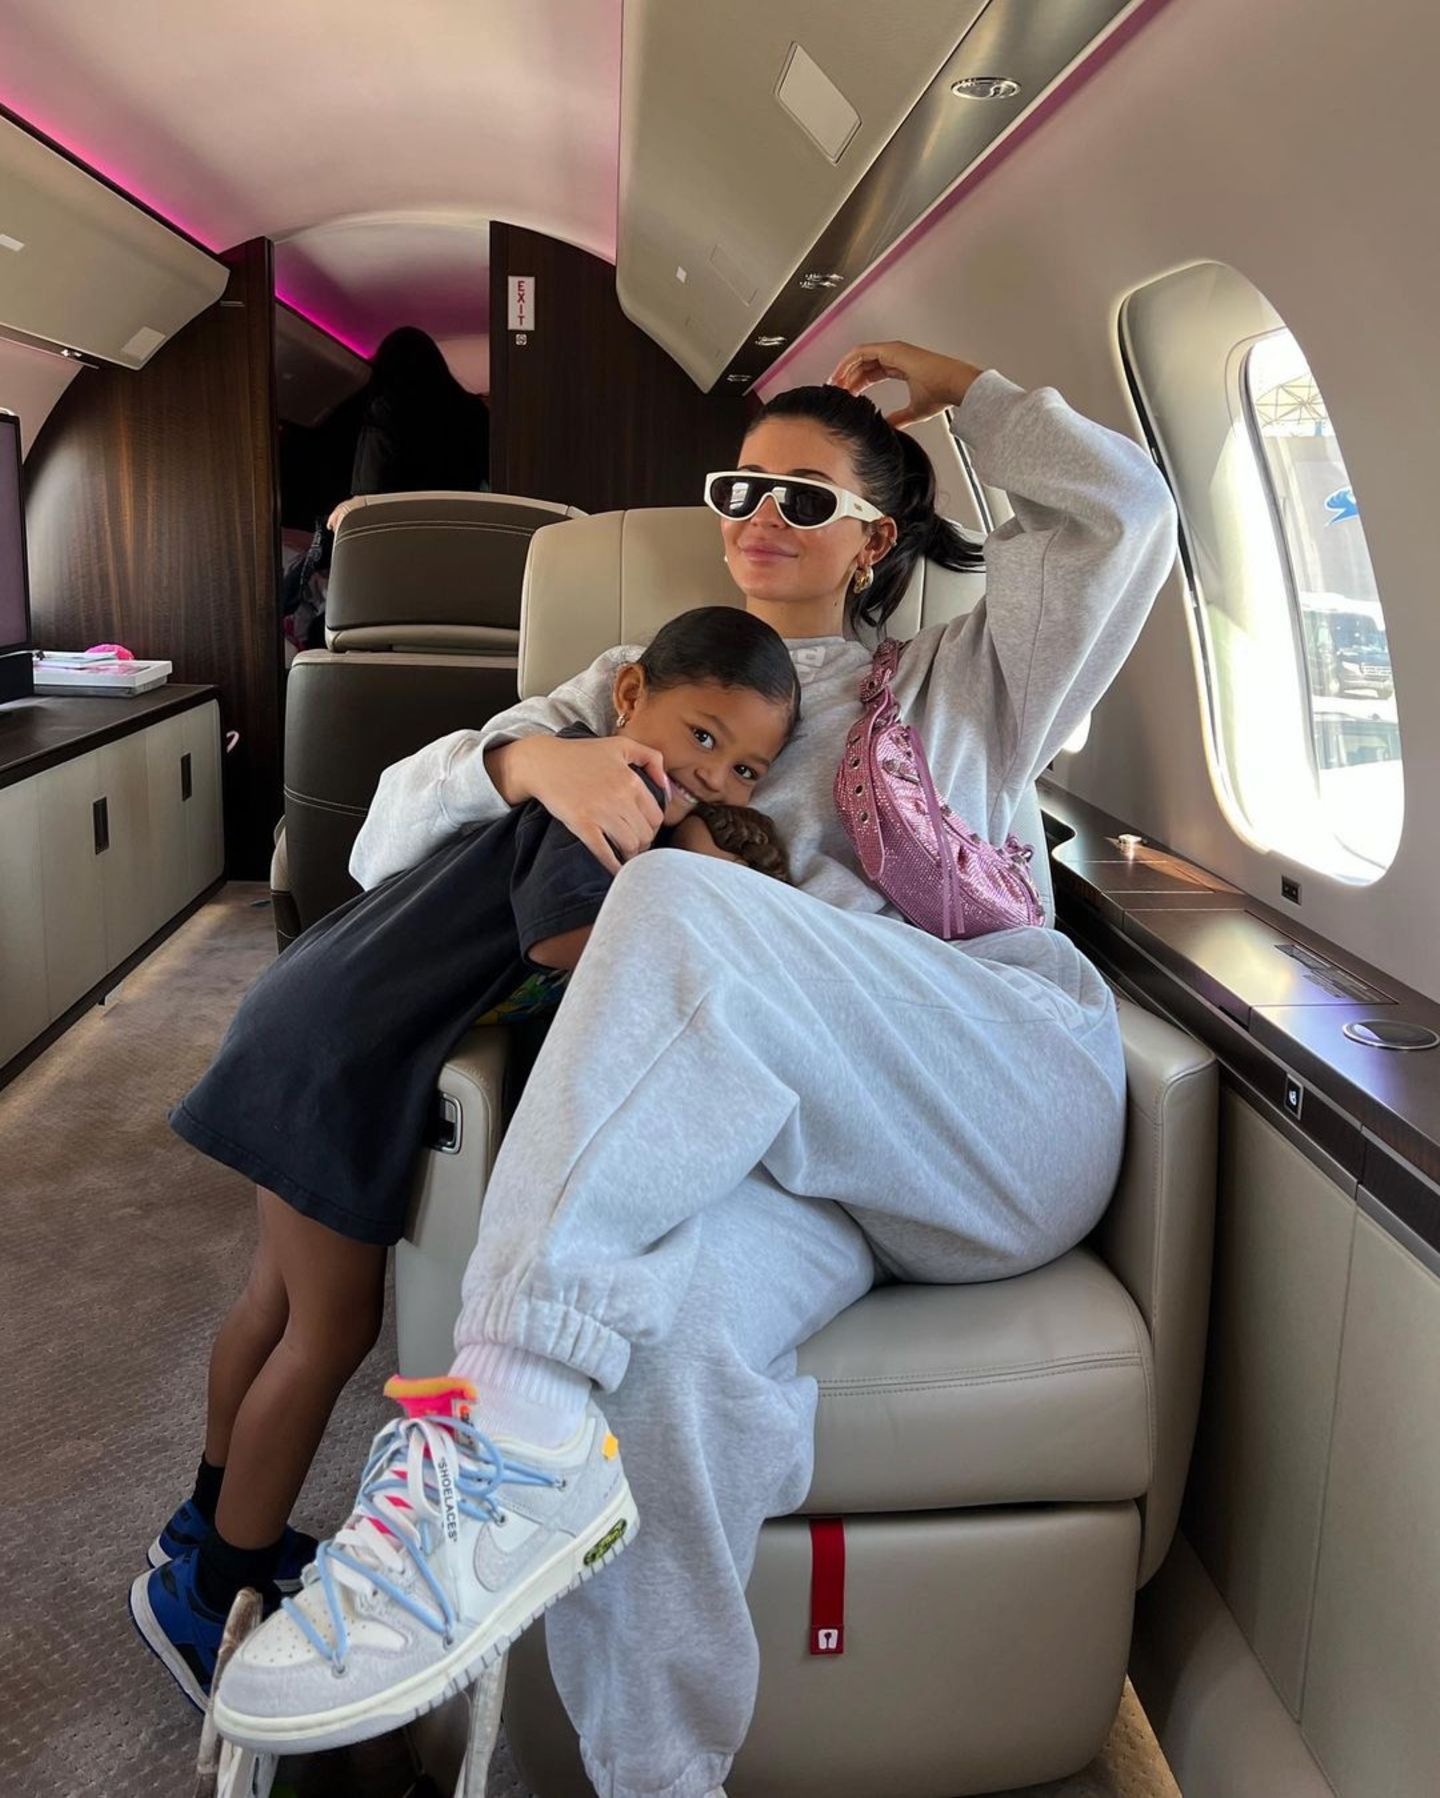 Zu den Billboard Music Awards 2022 jettet Kylie Jenner kurzerhand im Privatflieger. Ihre selbst ernannte "KylieAir" bringt sie komfortabel zum Veranstaltungsort nach Las Vegas. Mit dabei hat die Milliardärin Töchterchen Stormi und Freund Travis Scott. Das Trio wird später gemeinsam auf dem Red Carpet gesichtet. 